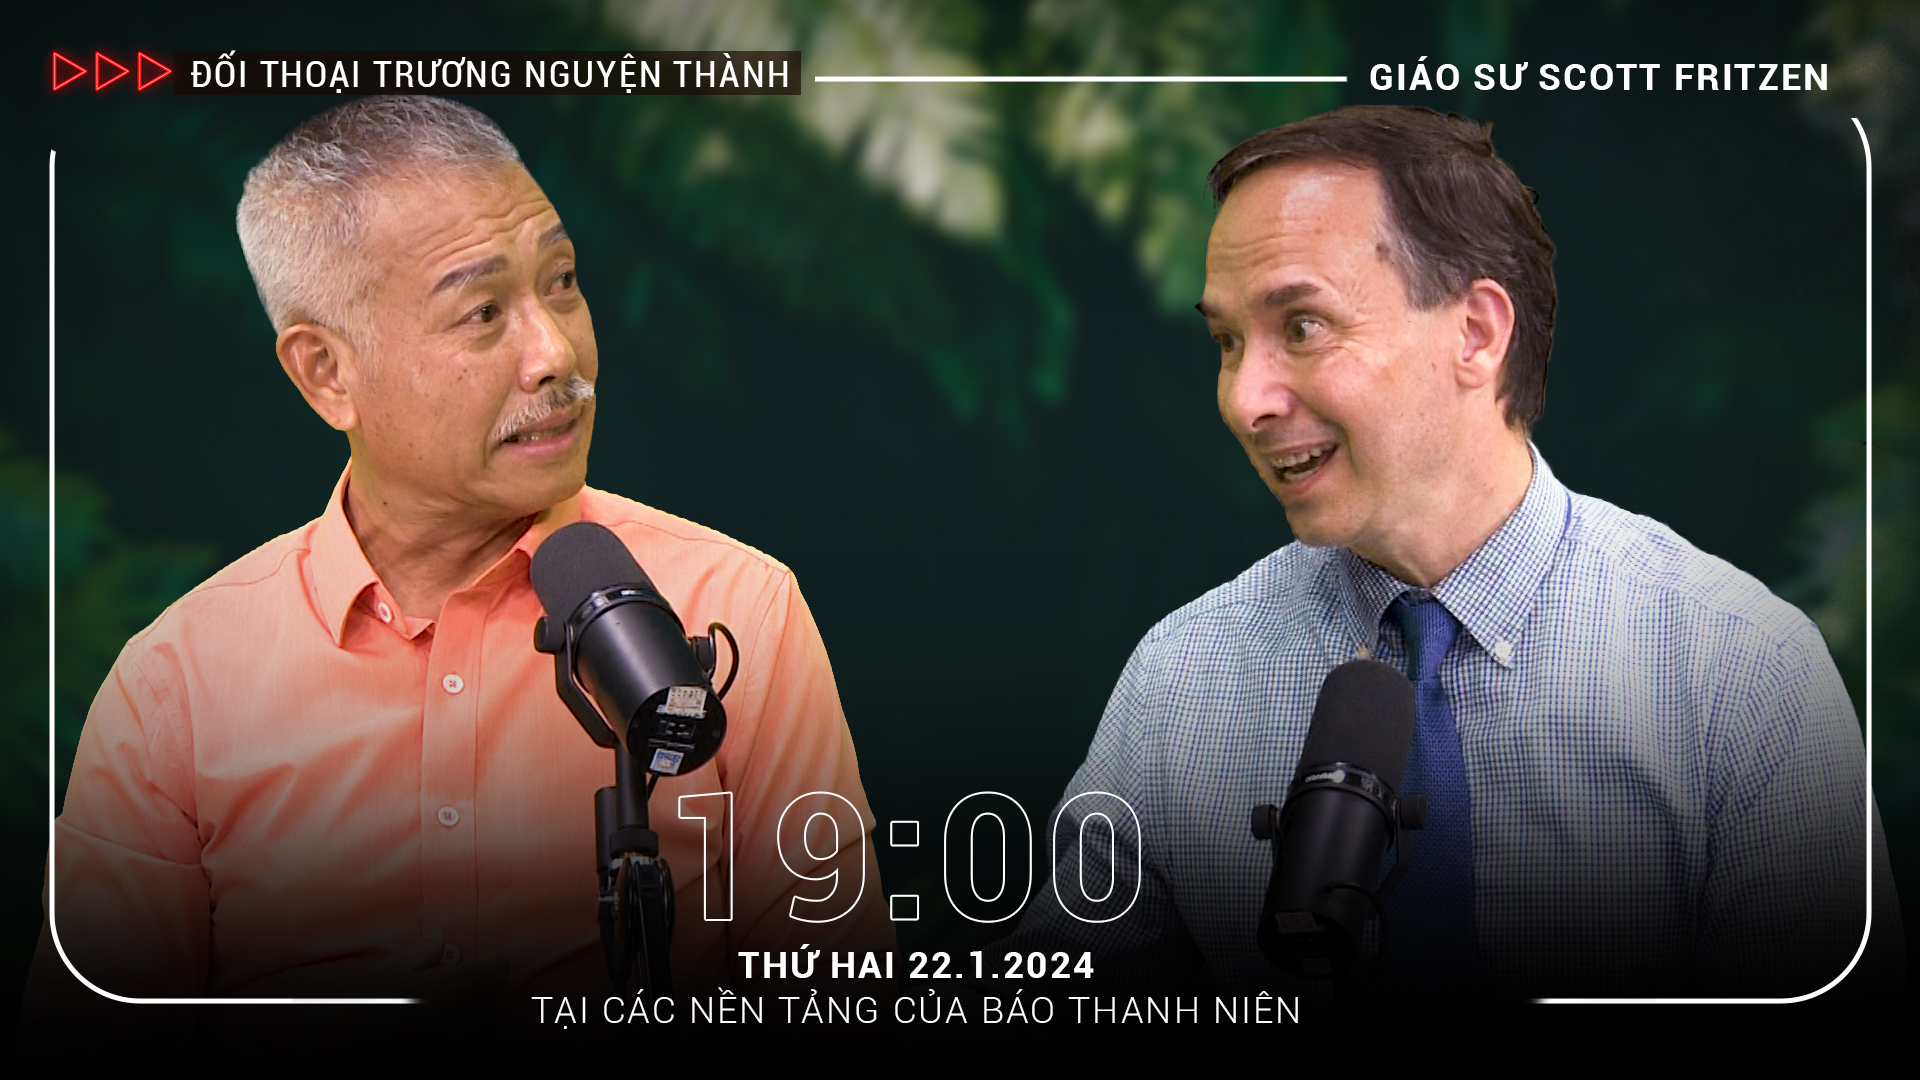 Tranh luận bằng tiếng Việt cùng chủ tịch người Mỹ của Trường ĐH Fulbright VN | 'Đối thoại Trương Nguyện Thành' số 5- Ảnh 1.